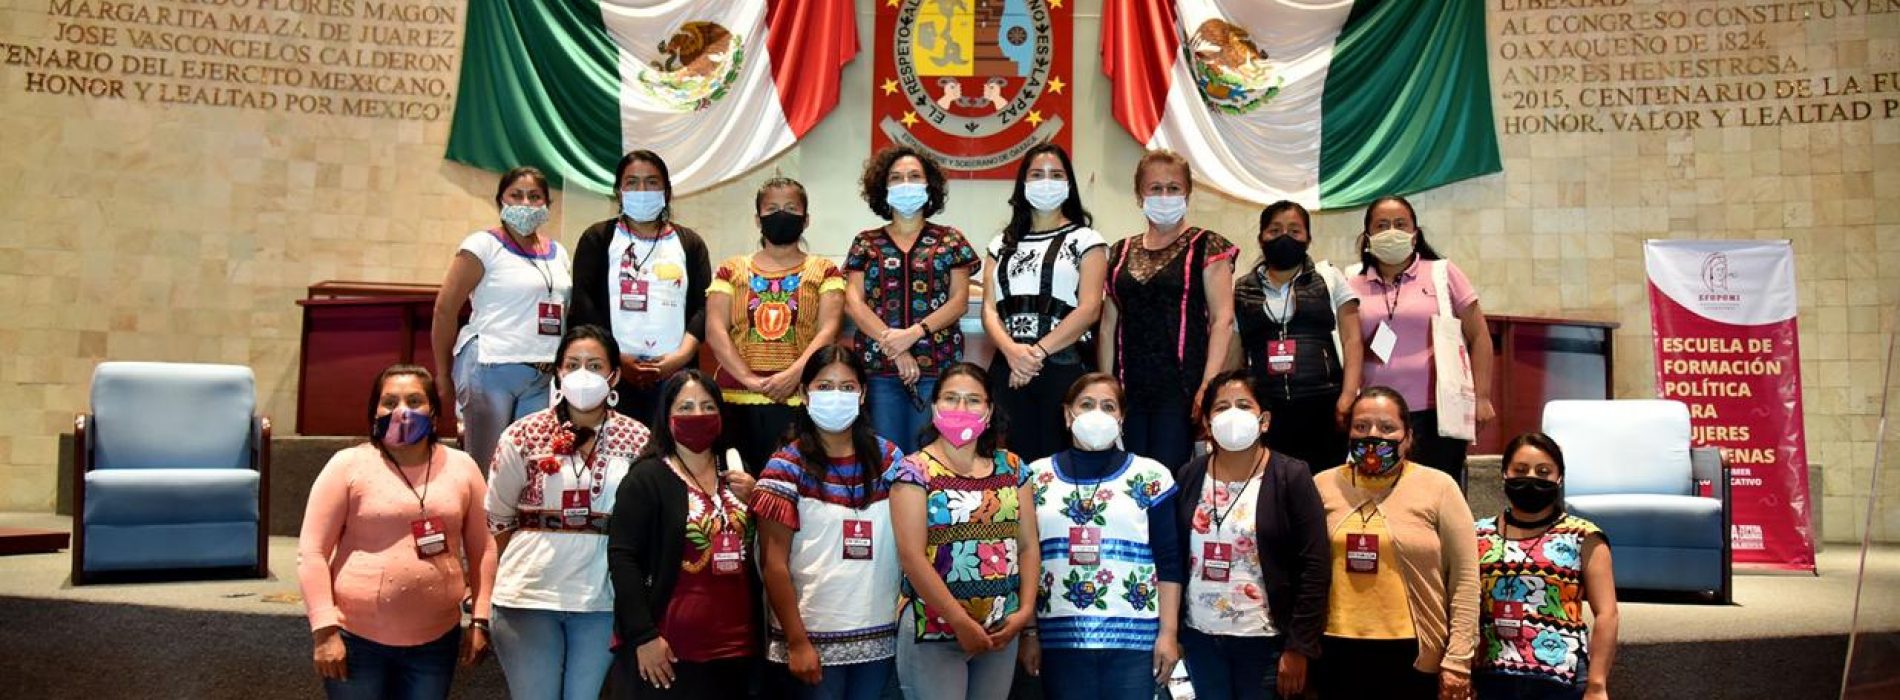 Congreso de Oaxaca, aliado e impulsor de los derechos políticos de mujeres indígenas